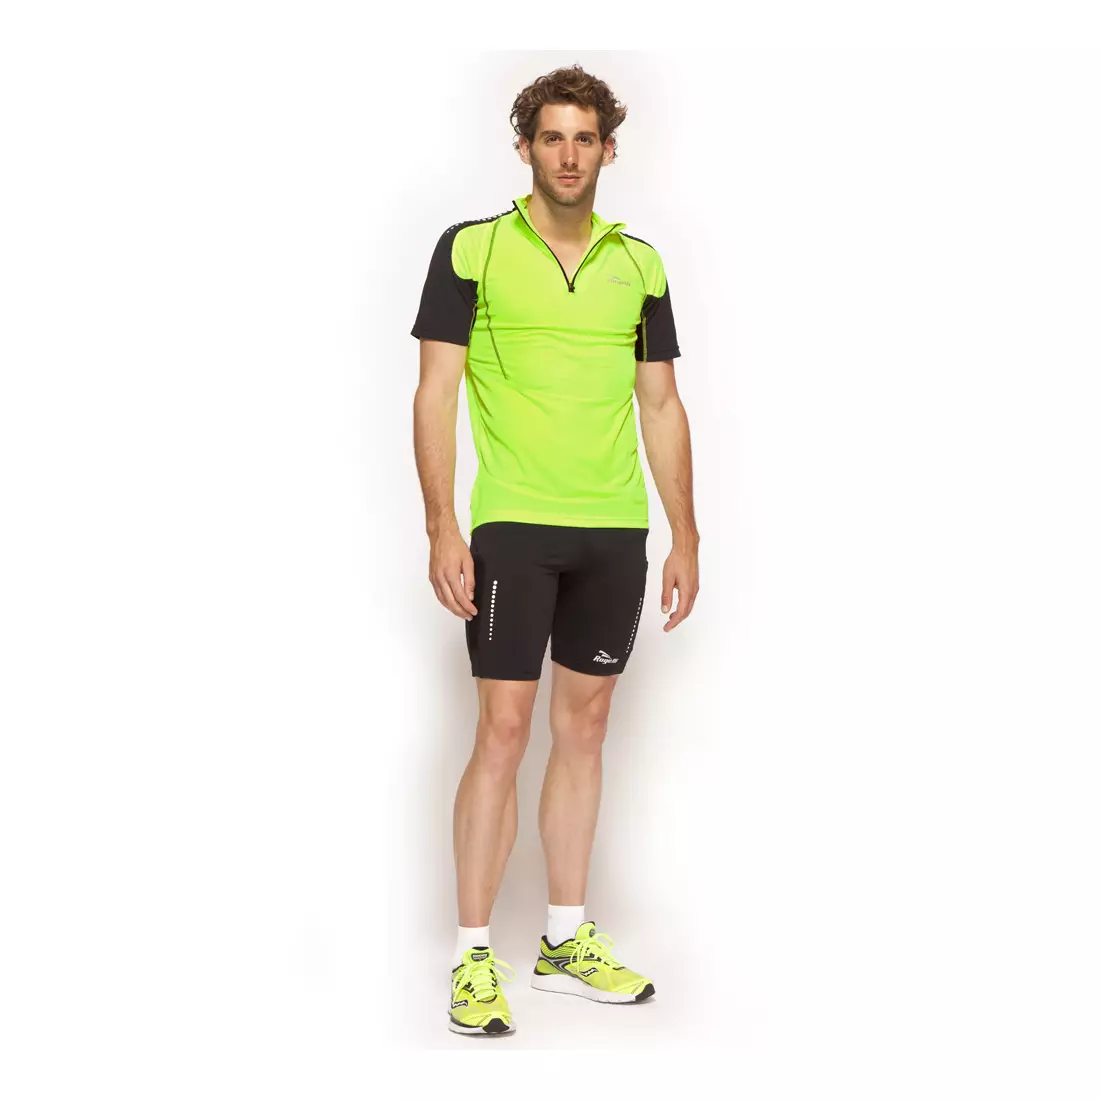 ROGELLI RUN ARES - ultraľahké pánske športové tričko